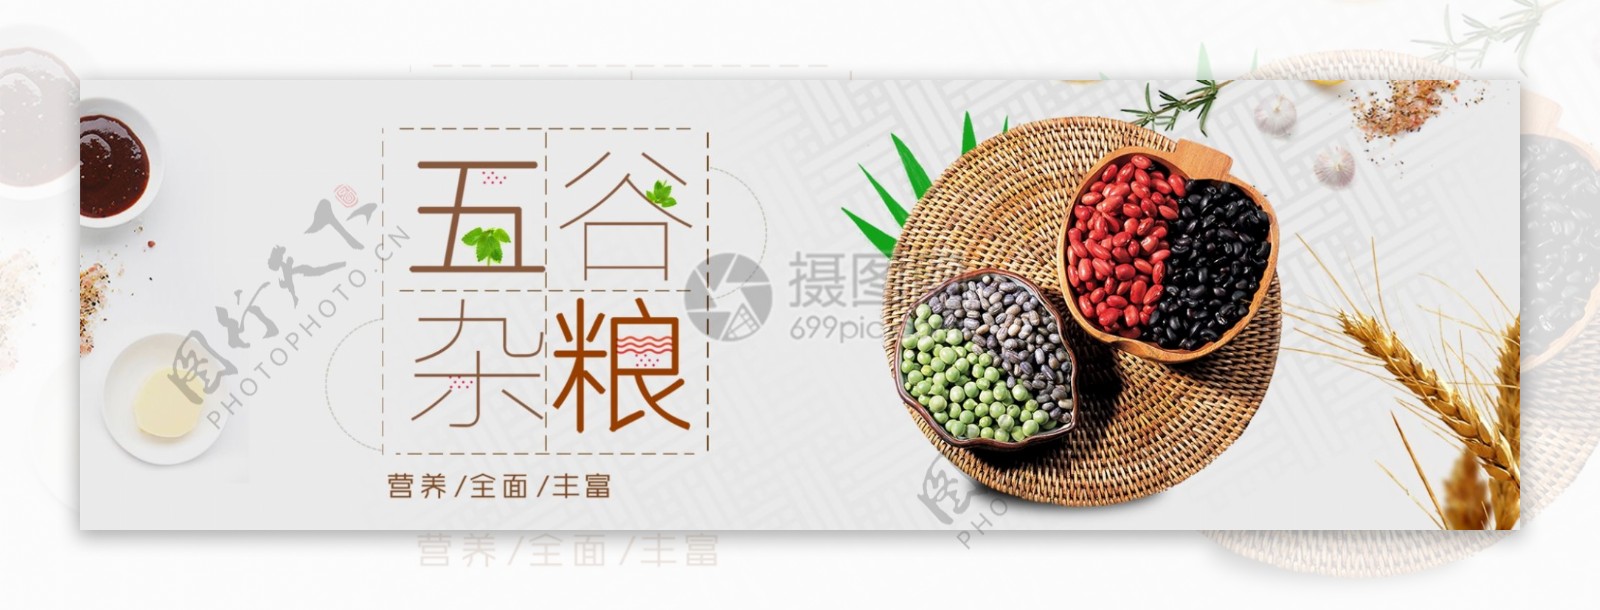 营养食品五谷杂粮淘宝banner